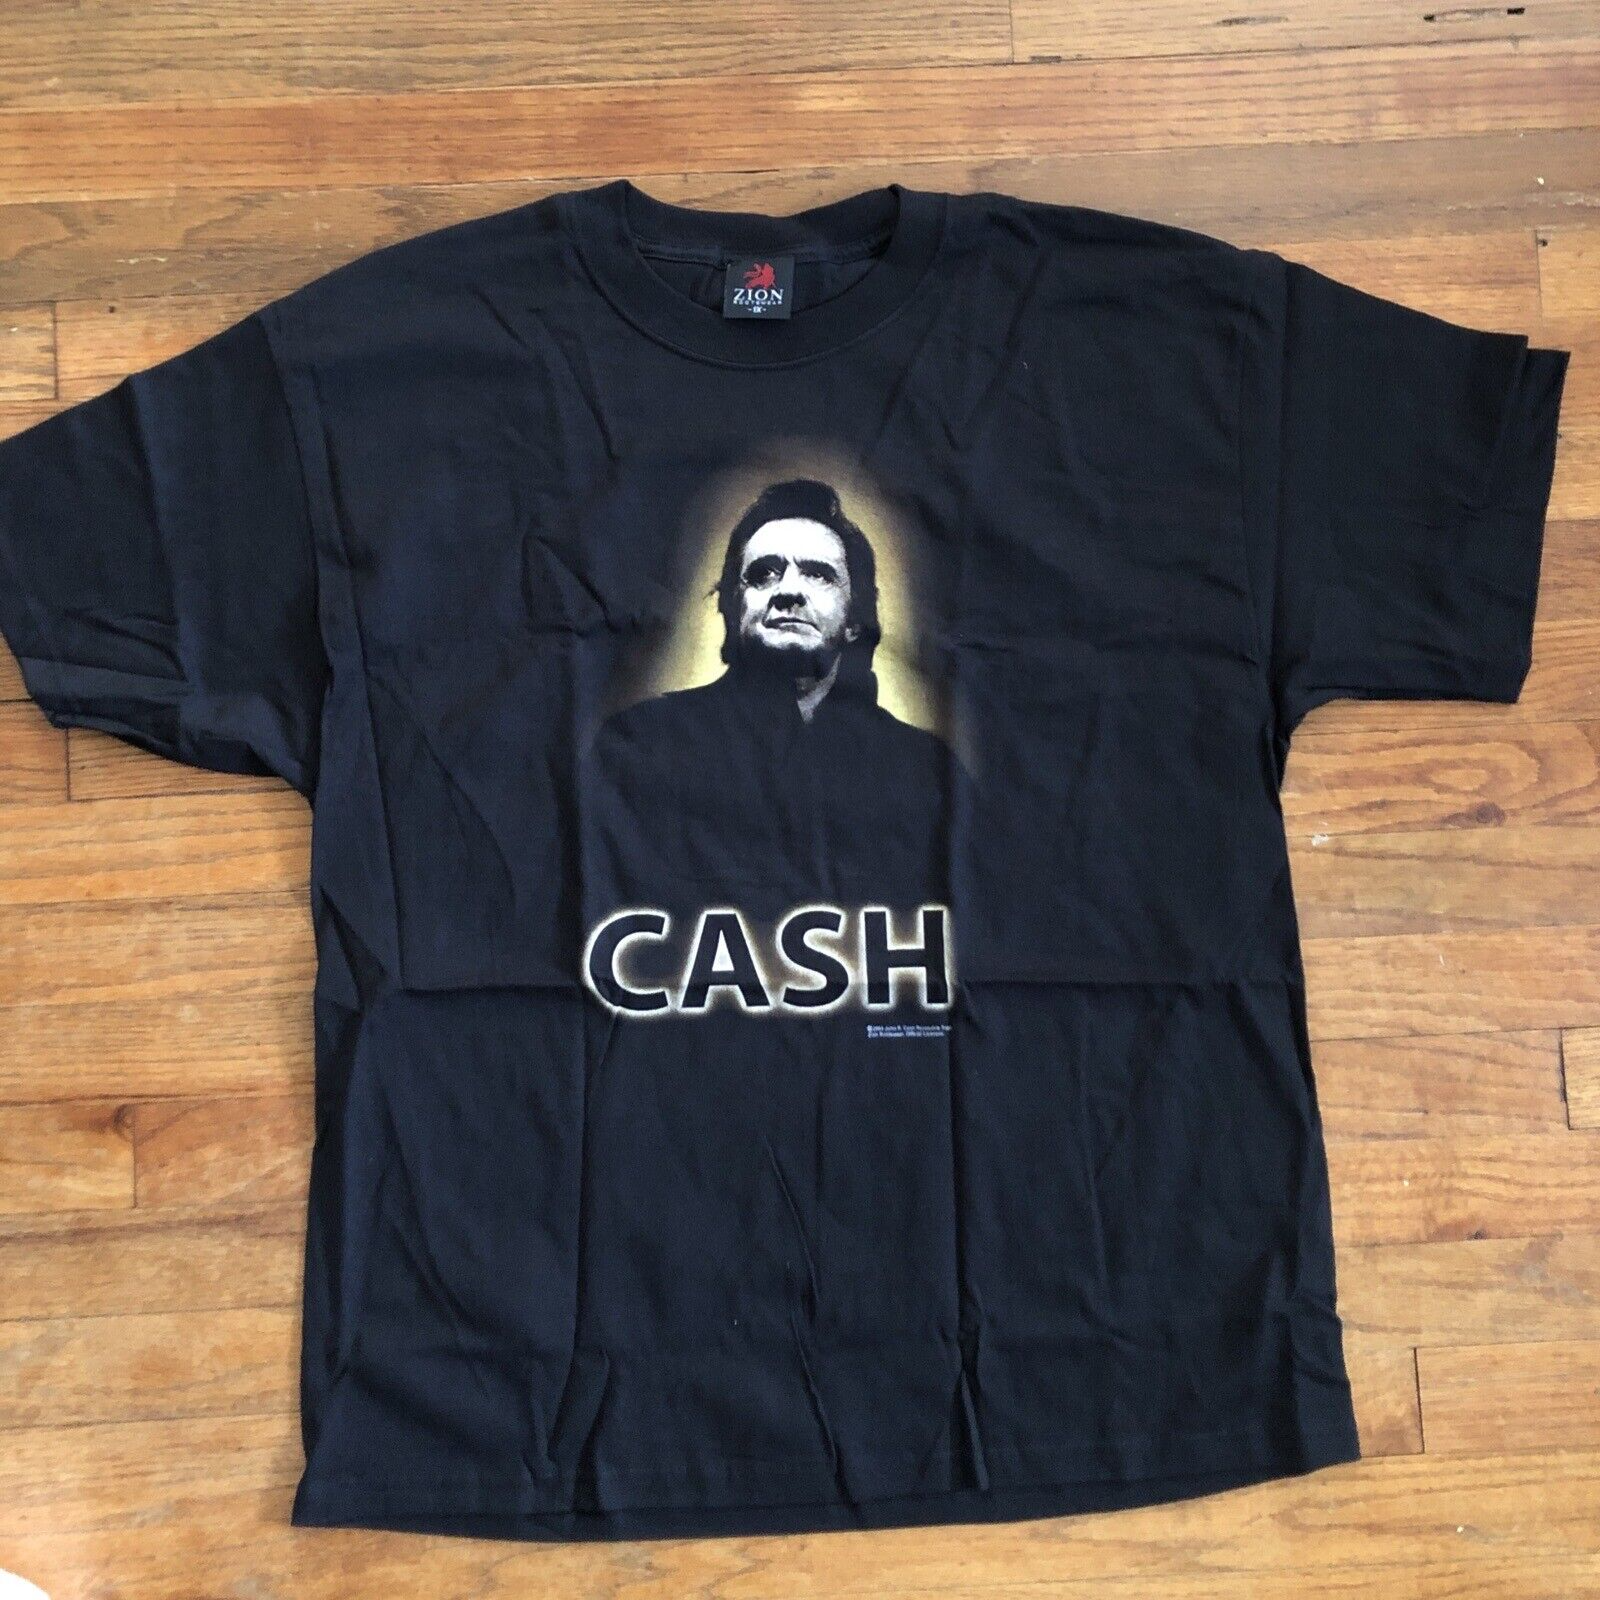 NEW Johnny Cash Black Tshirt